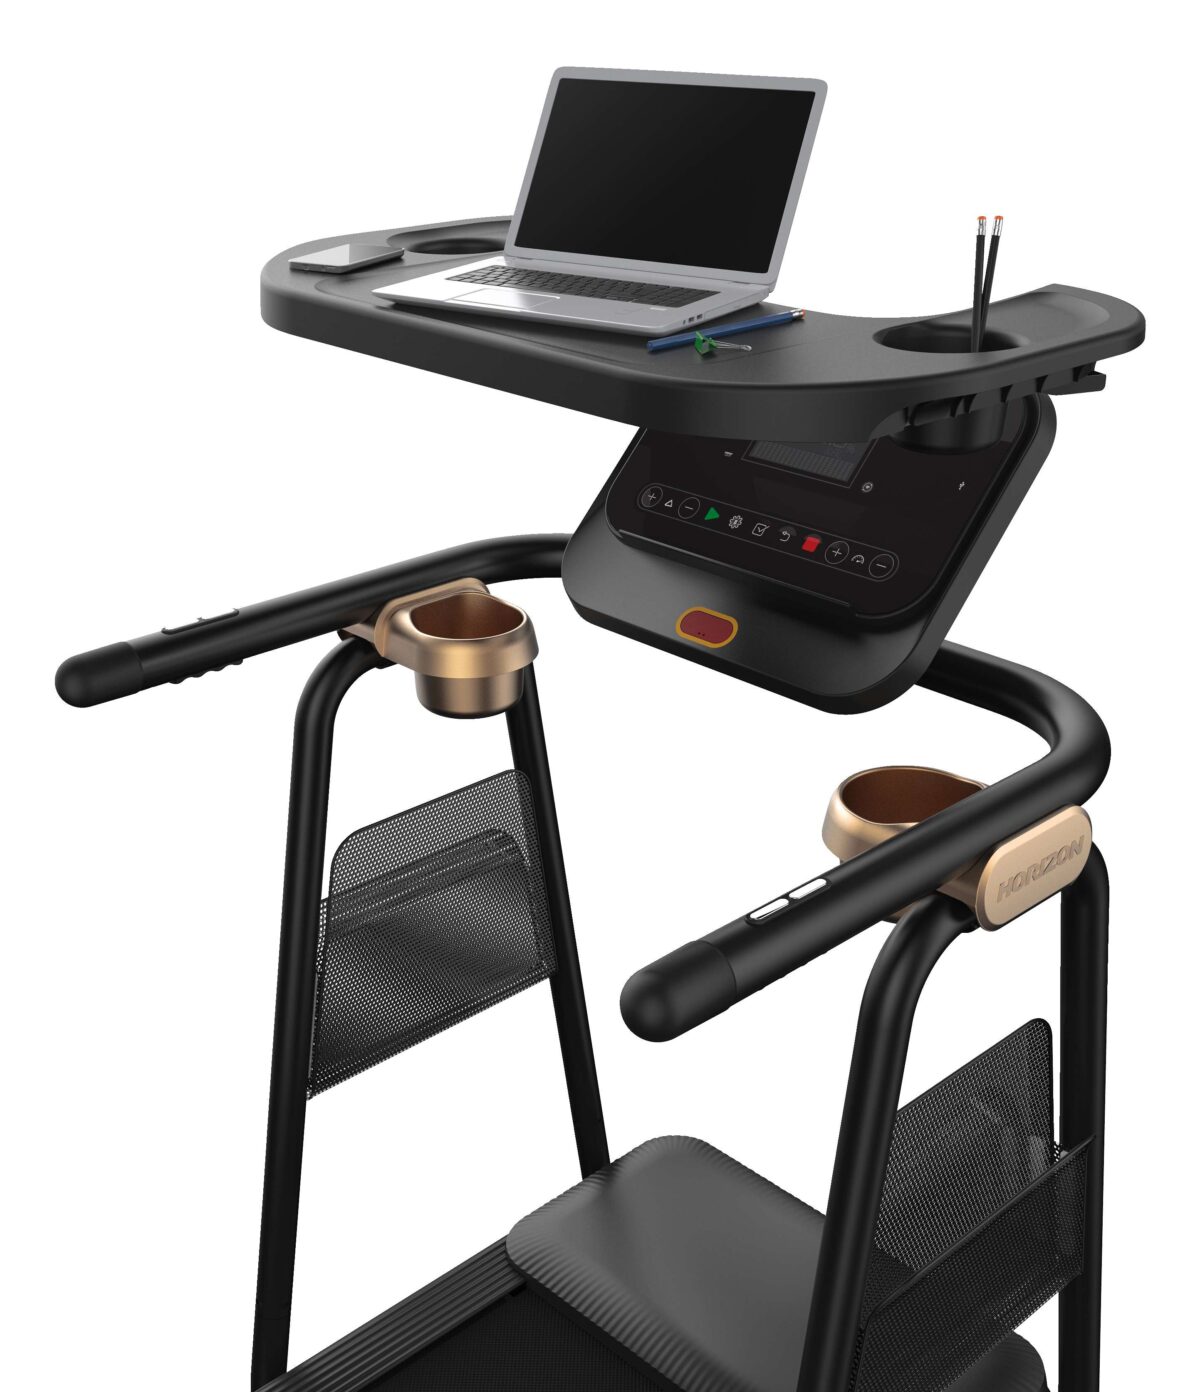 Horizon Fitness Ablagetisch für Laufband "Citta TT5.0" - Fitnessgeräte - Horizon Fitness